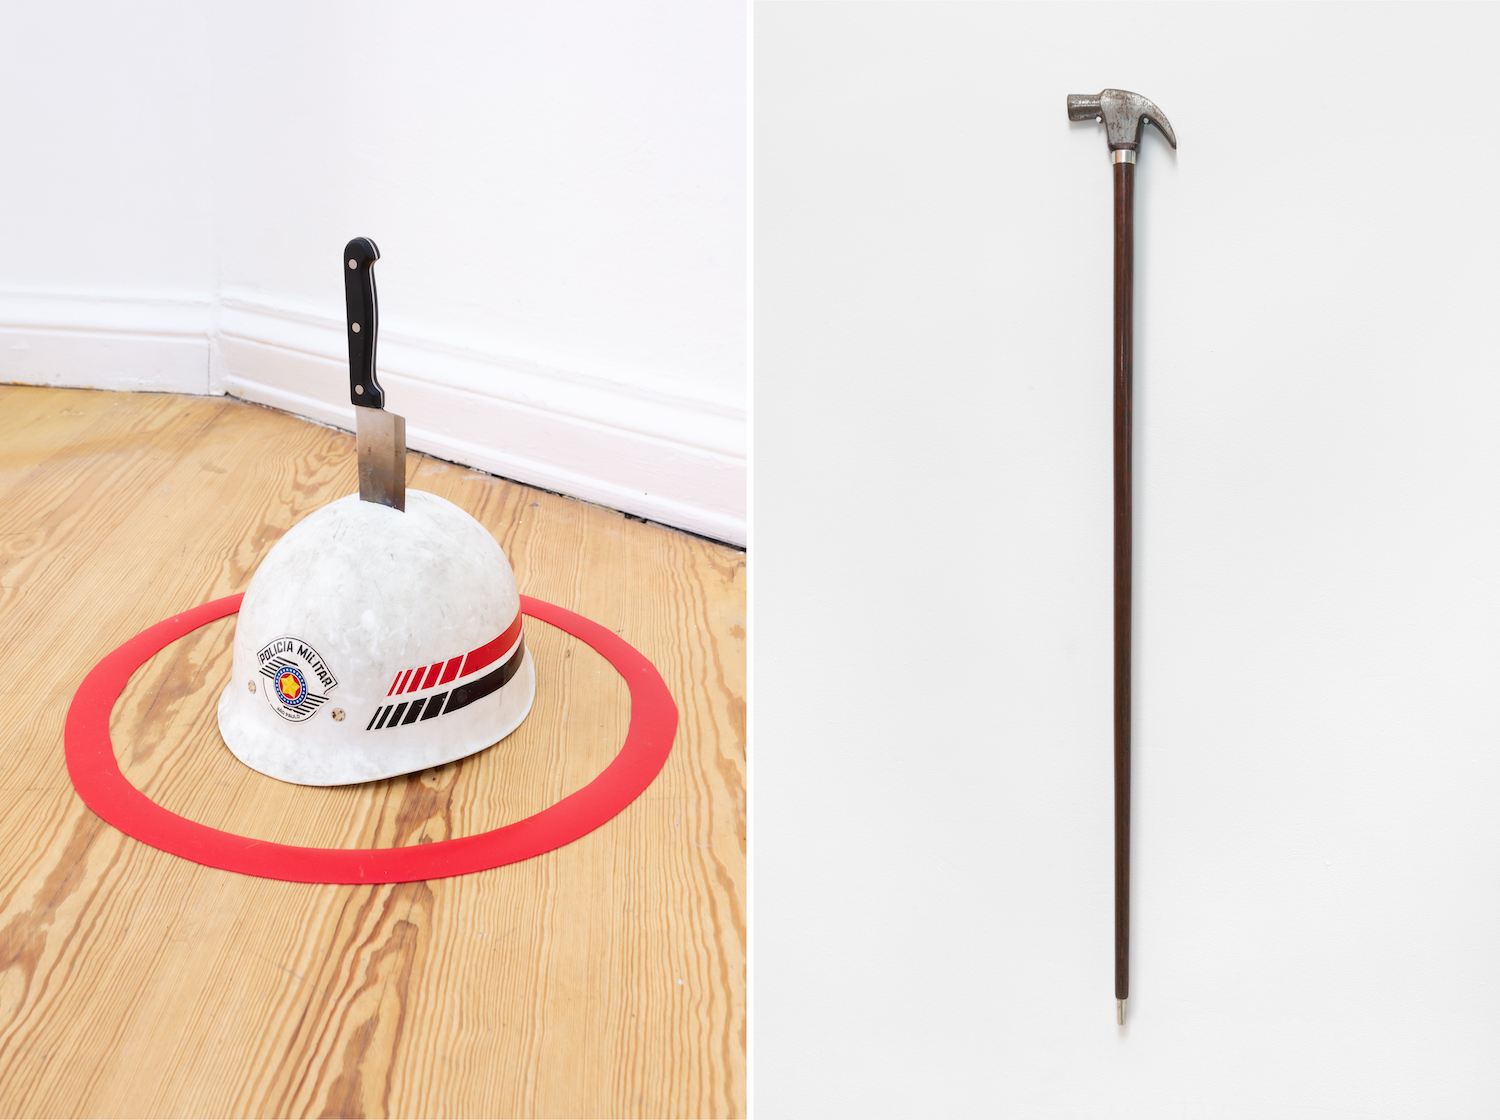 Links: Ein Messer steckt in einem Helm, der in einem roten Kreis auf Holzboden liegt. Rechts eine Kombination aus Hammer und Gehstock.